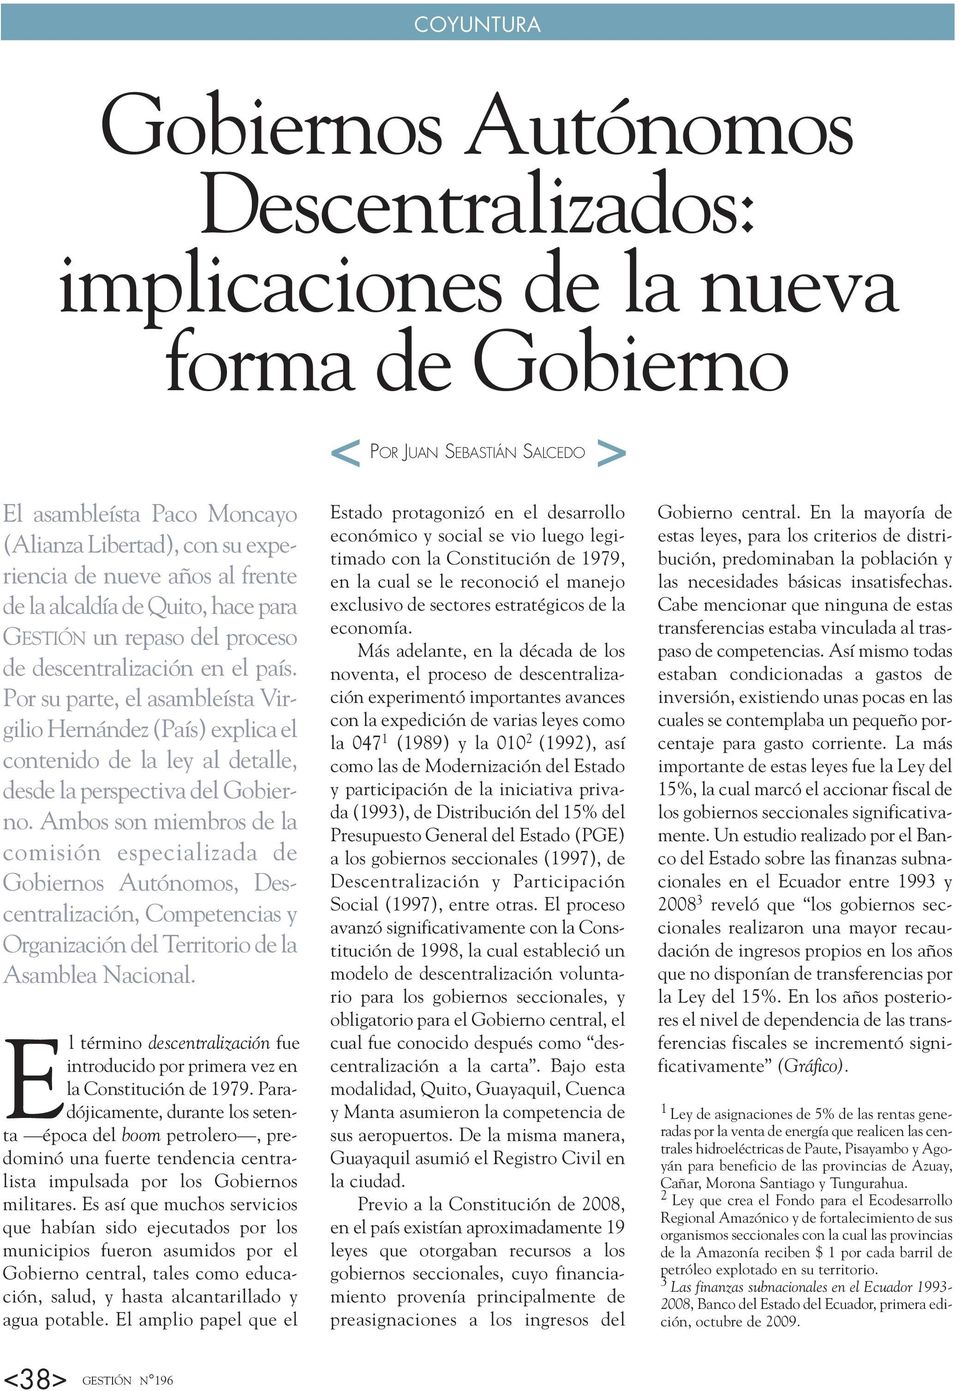 Por su parte, el asambleísta Virgilio Hernández (País) explica el contenido de la ley al detalle, desde la perspectiva del Gobierno.